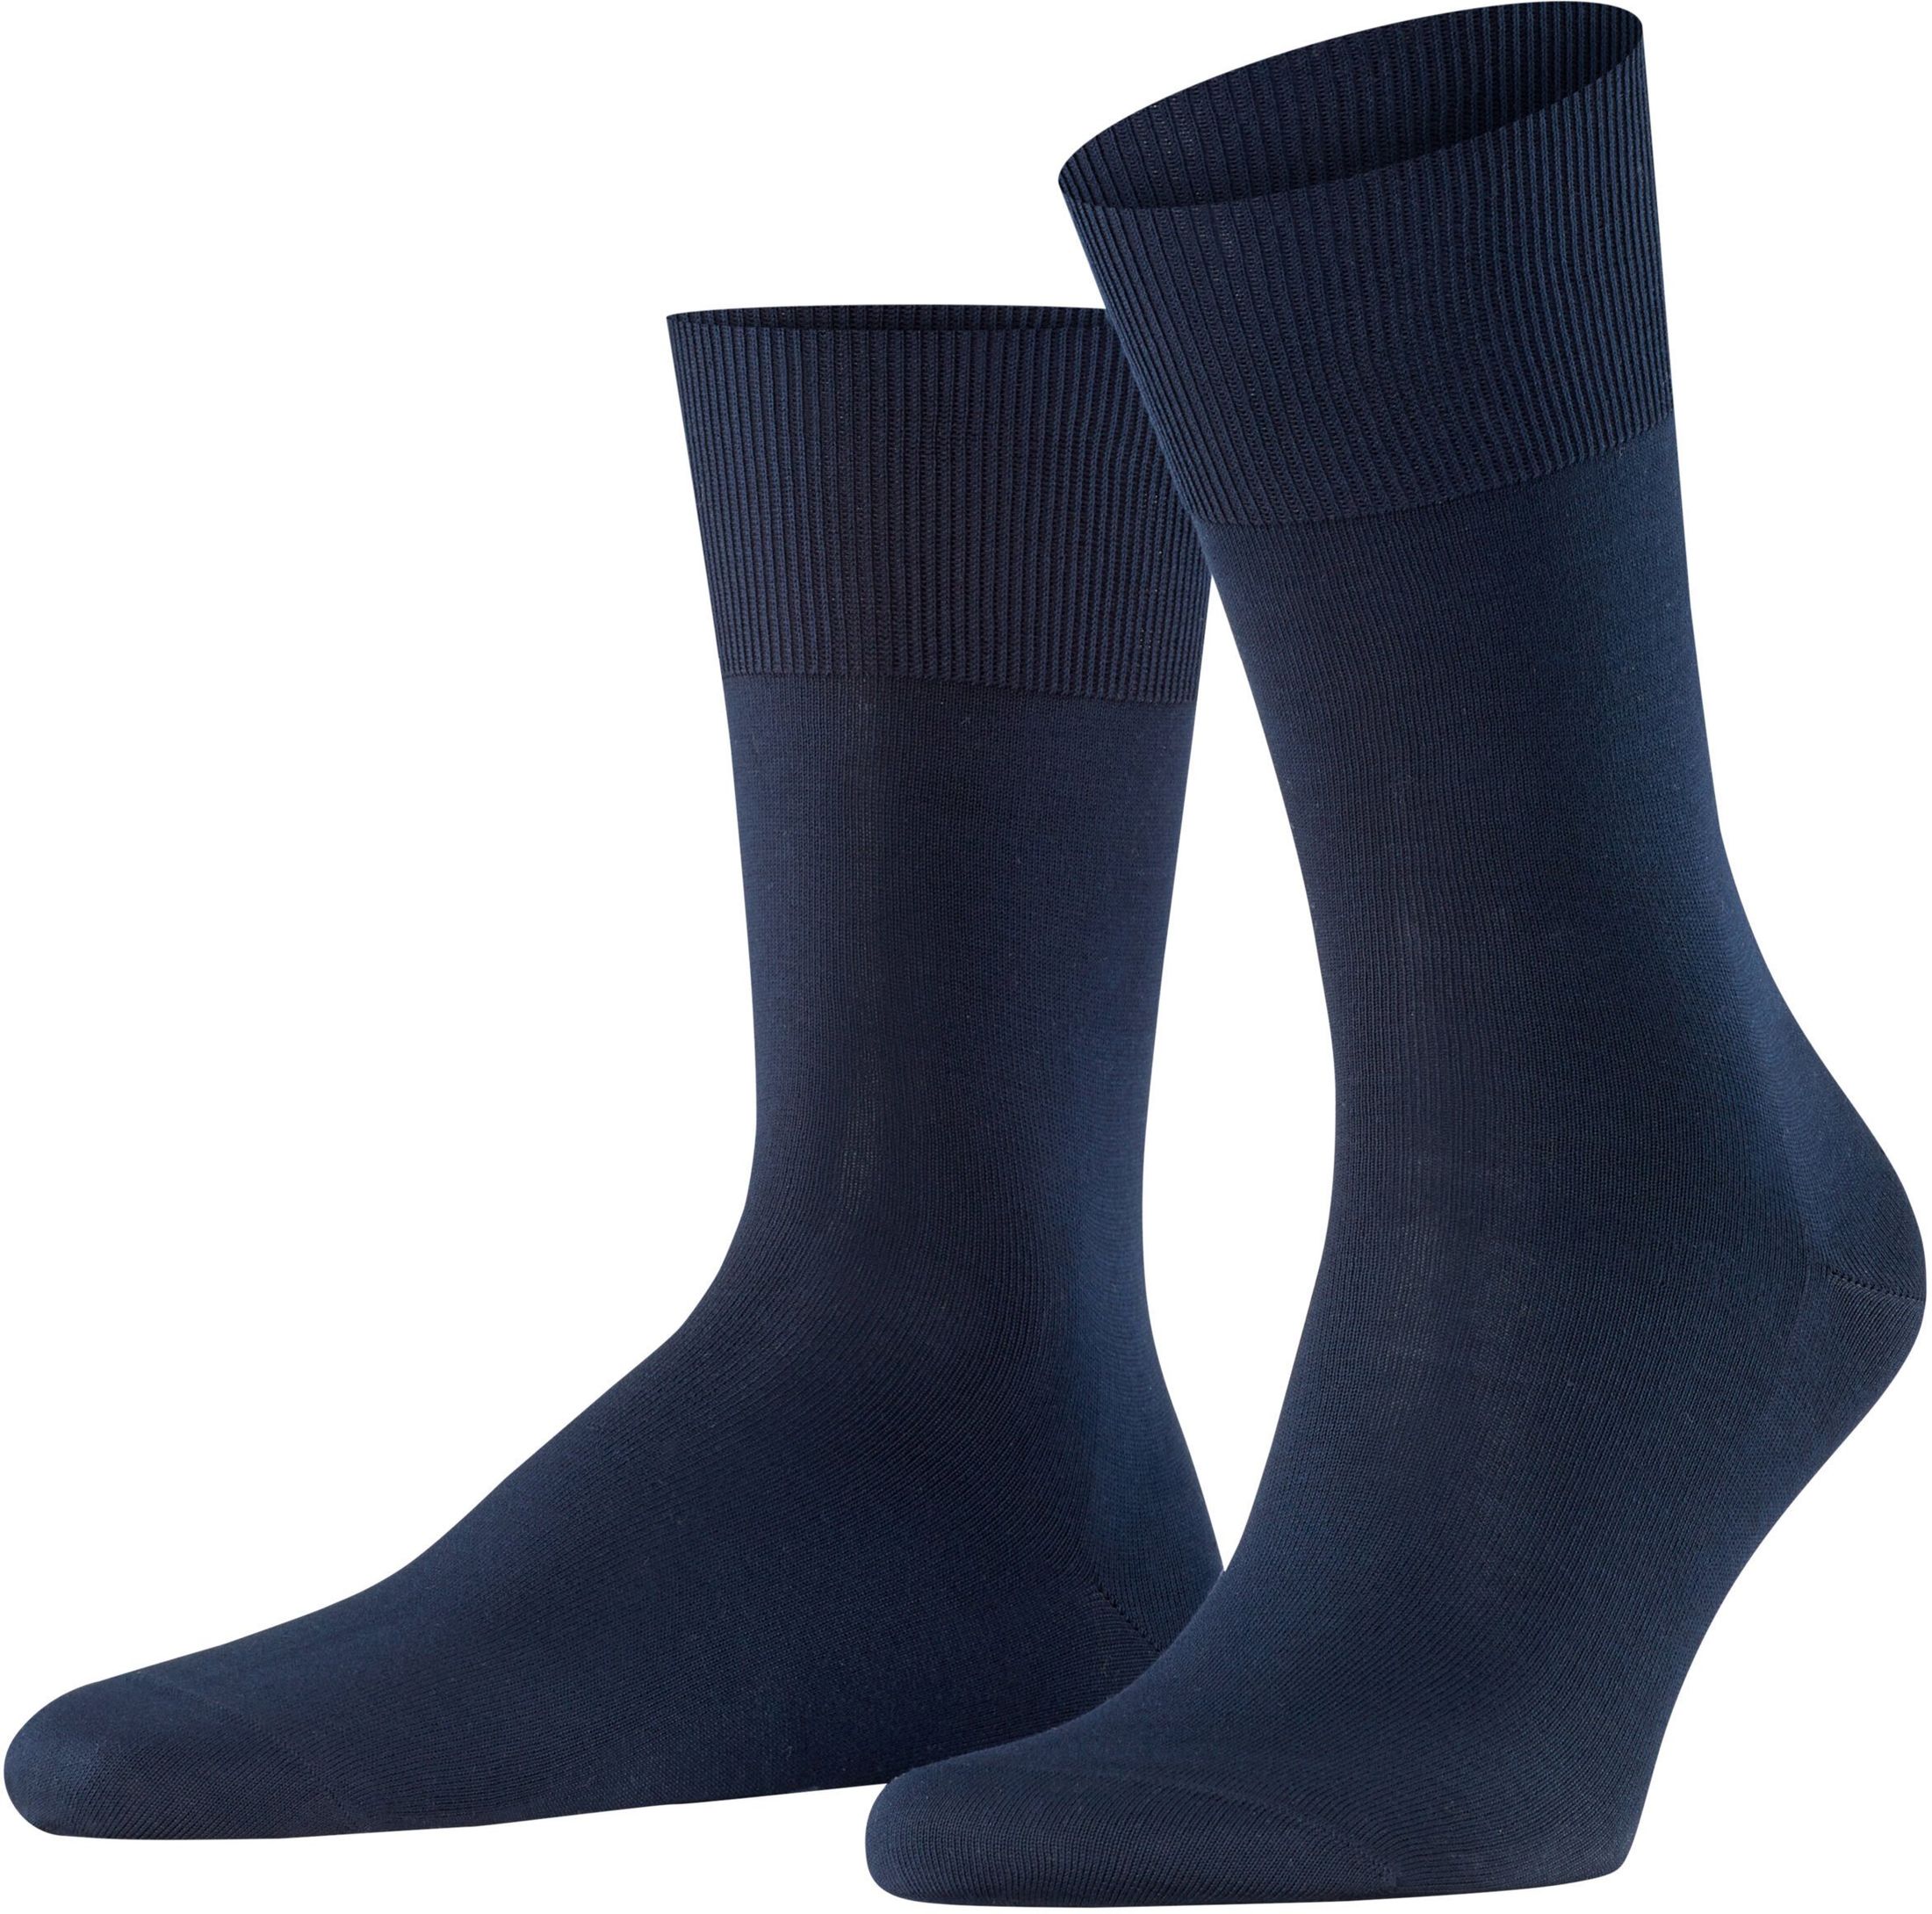 Falke Firenze Socks Navy 6370 Blue Dark Blue size 45-46